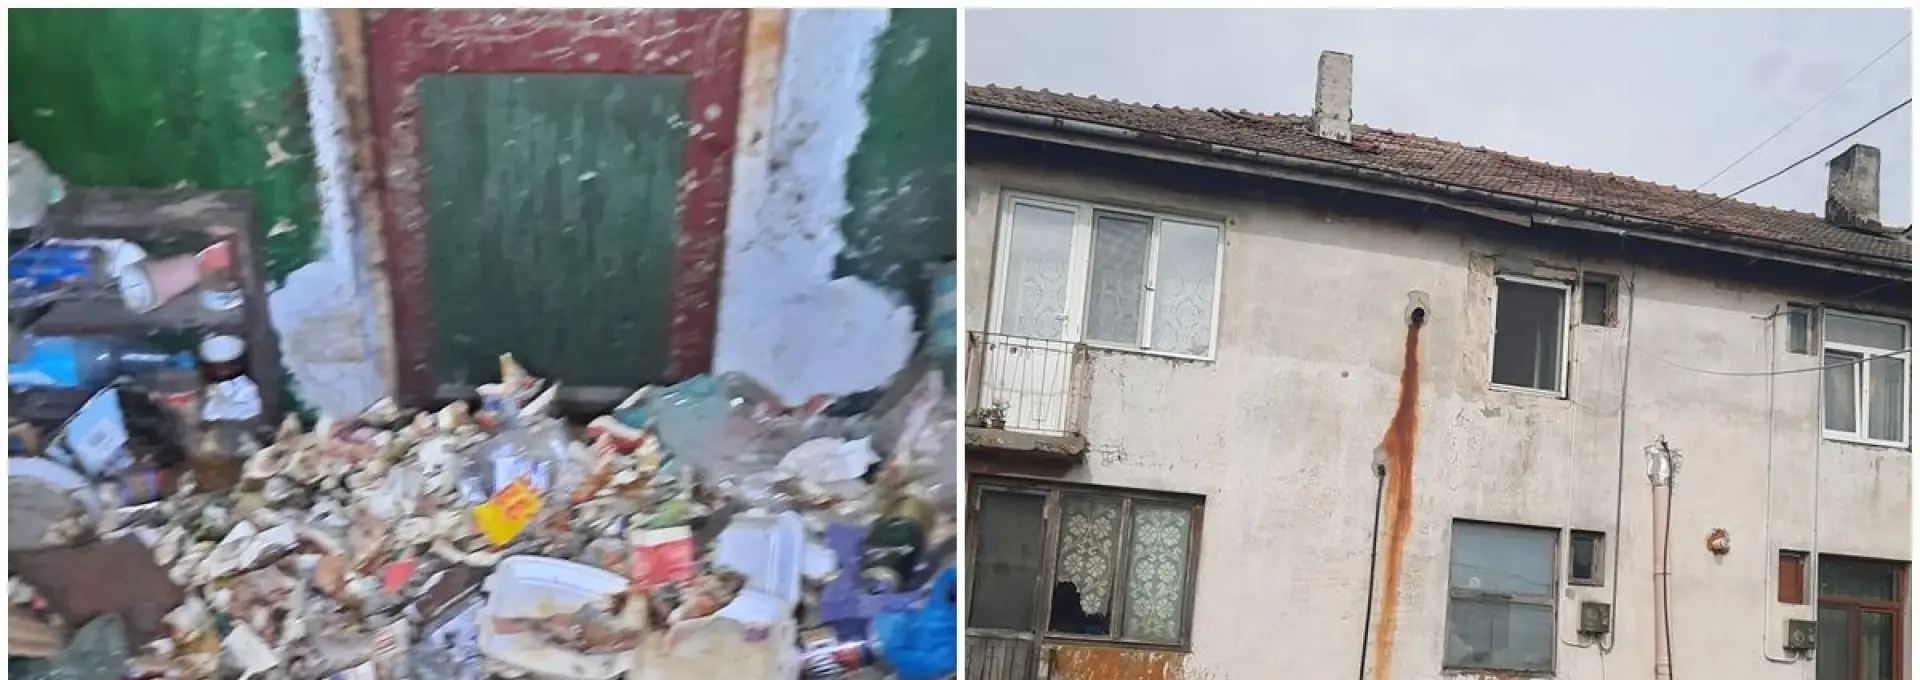 Foto Situaţie disperată pentru o familie din Brebeni, terorizată de un vecin care își aruncă gunoiul și dejecțiile în spațiile comune. Autorităţile locale spun că nu pot interveni